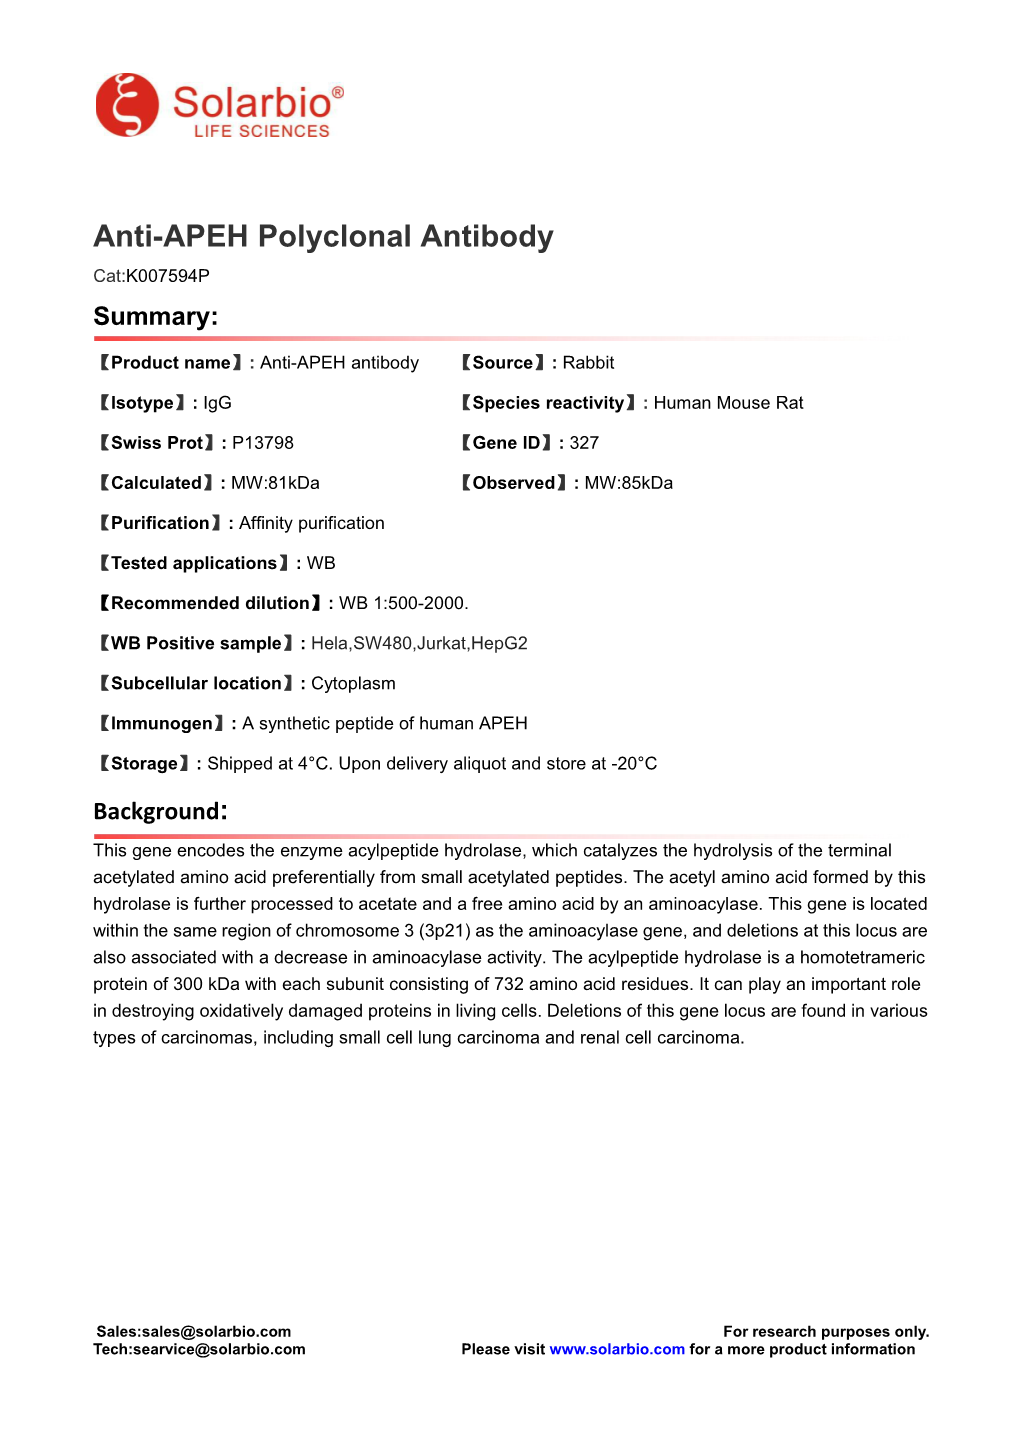 Anti-APEH Polyclonal Antibody Cat:K007594P Summary